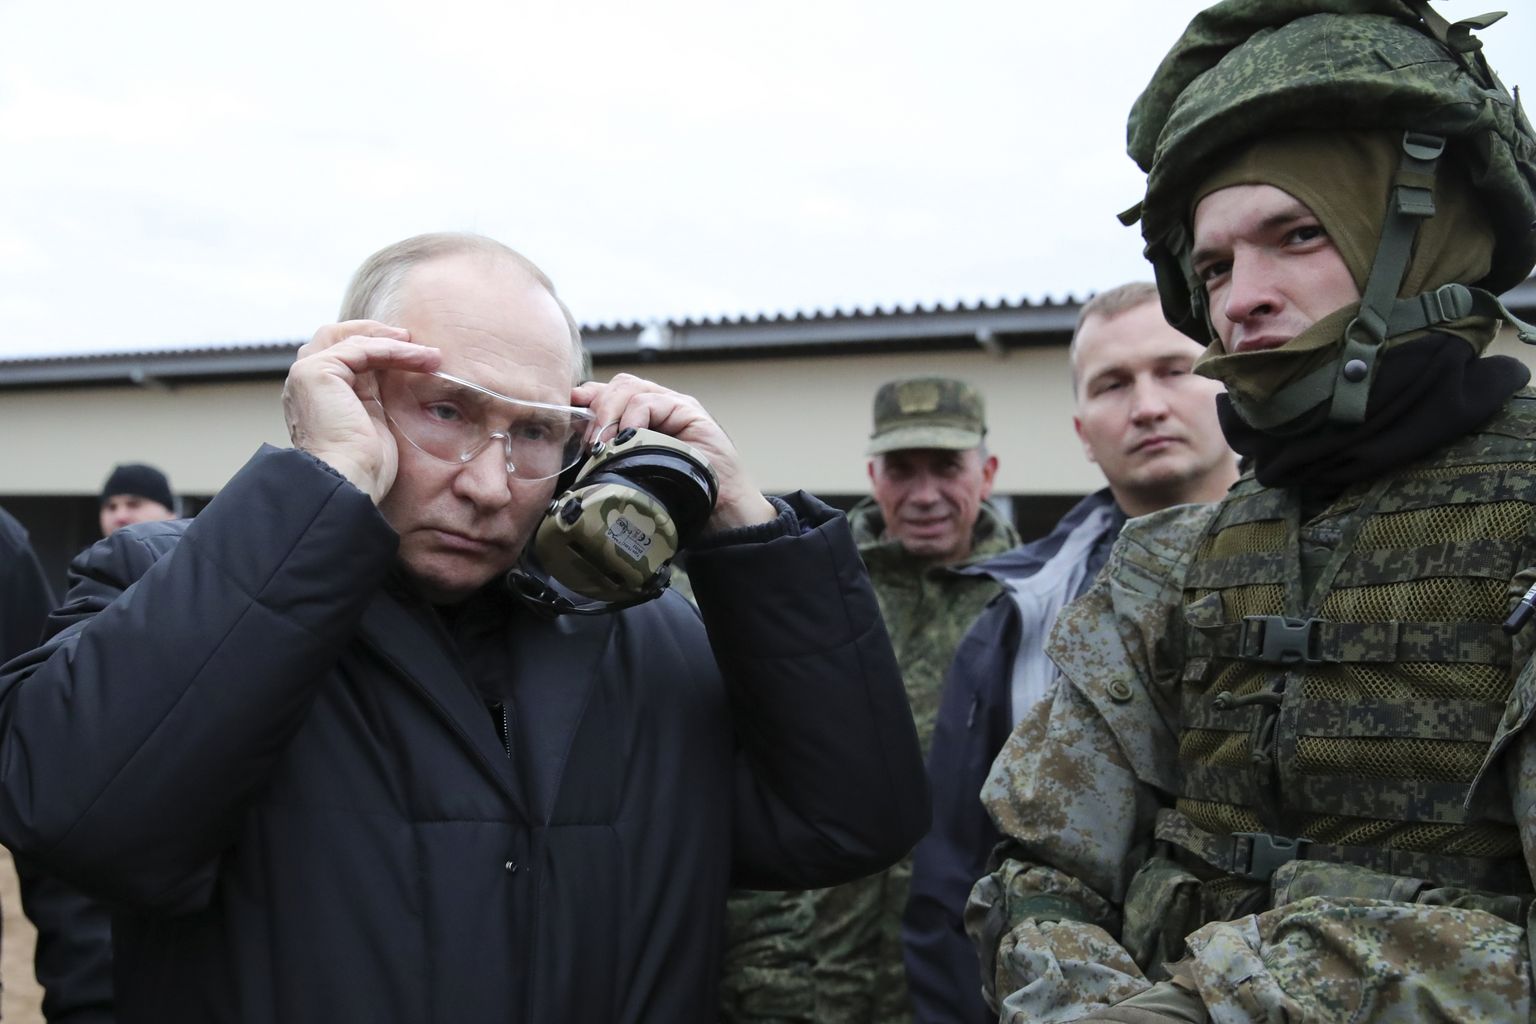 Venemaa president Putin väidetavalt väljaõppekeskust külastamas.